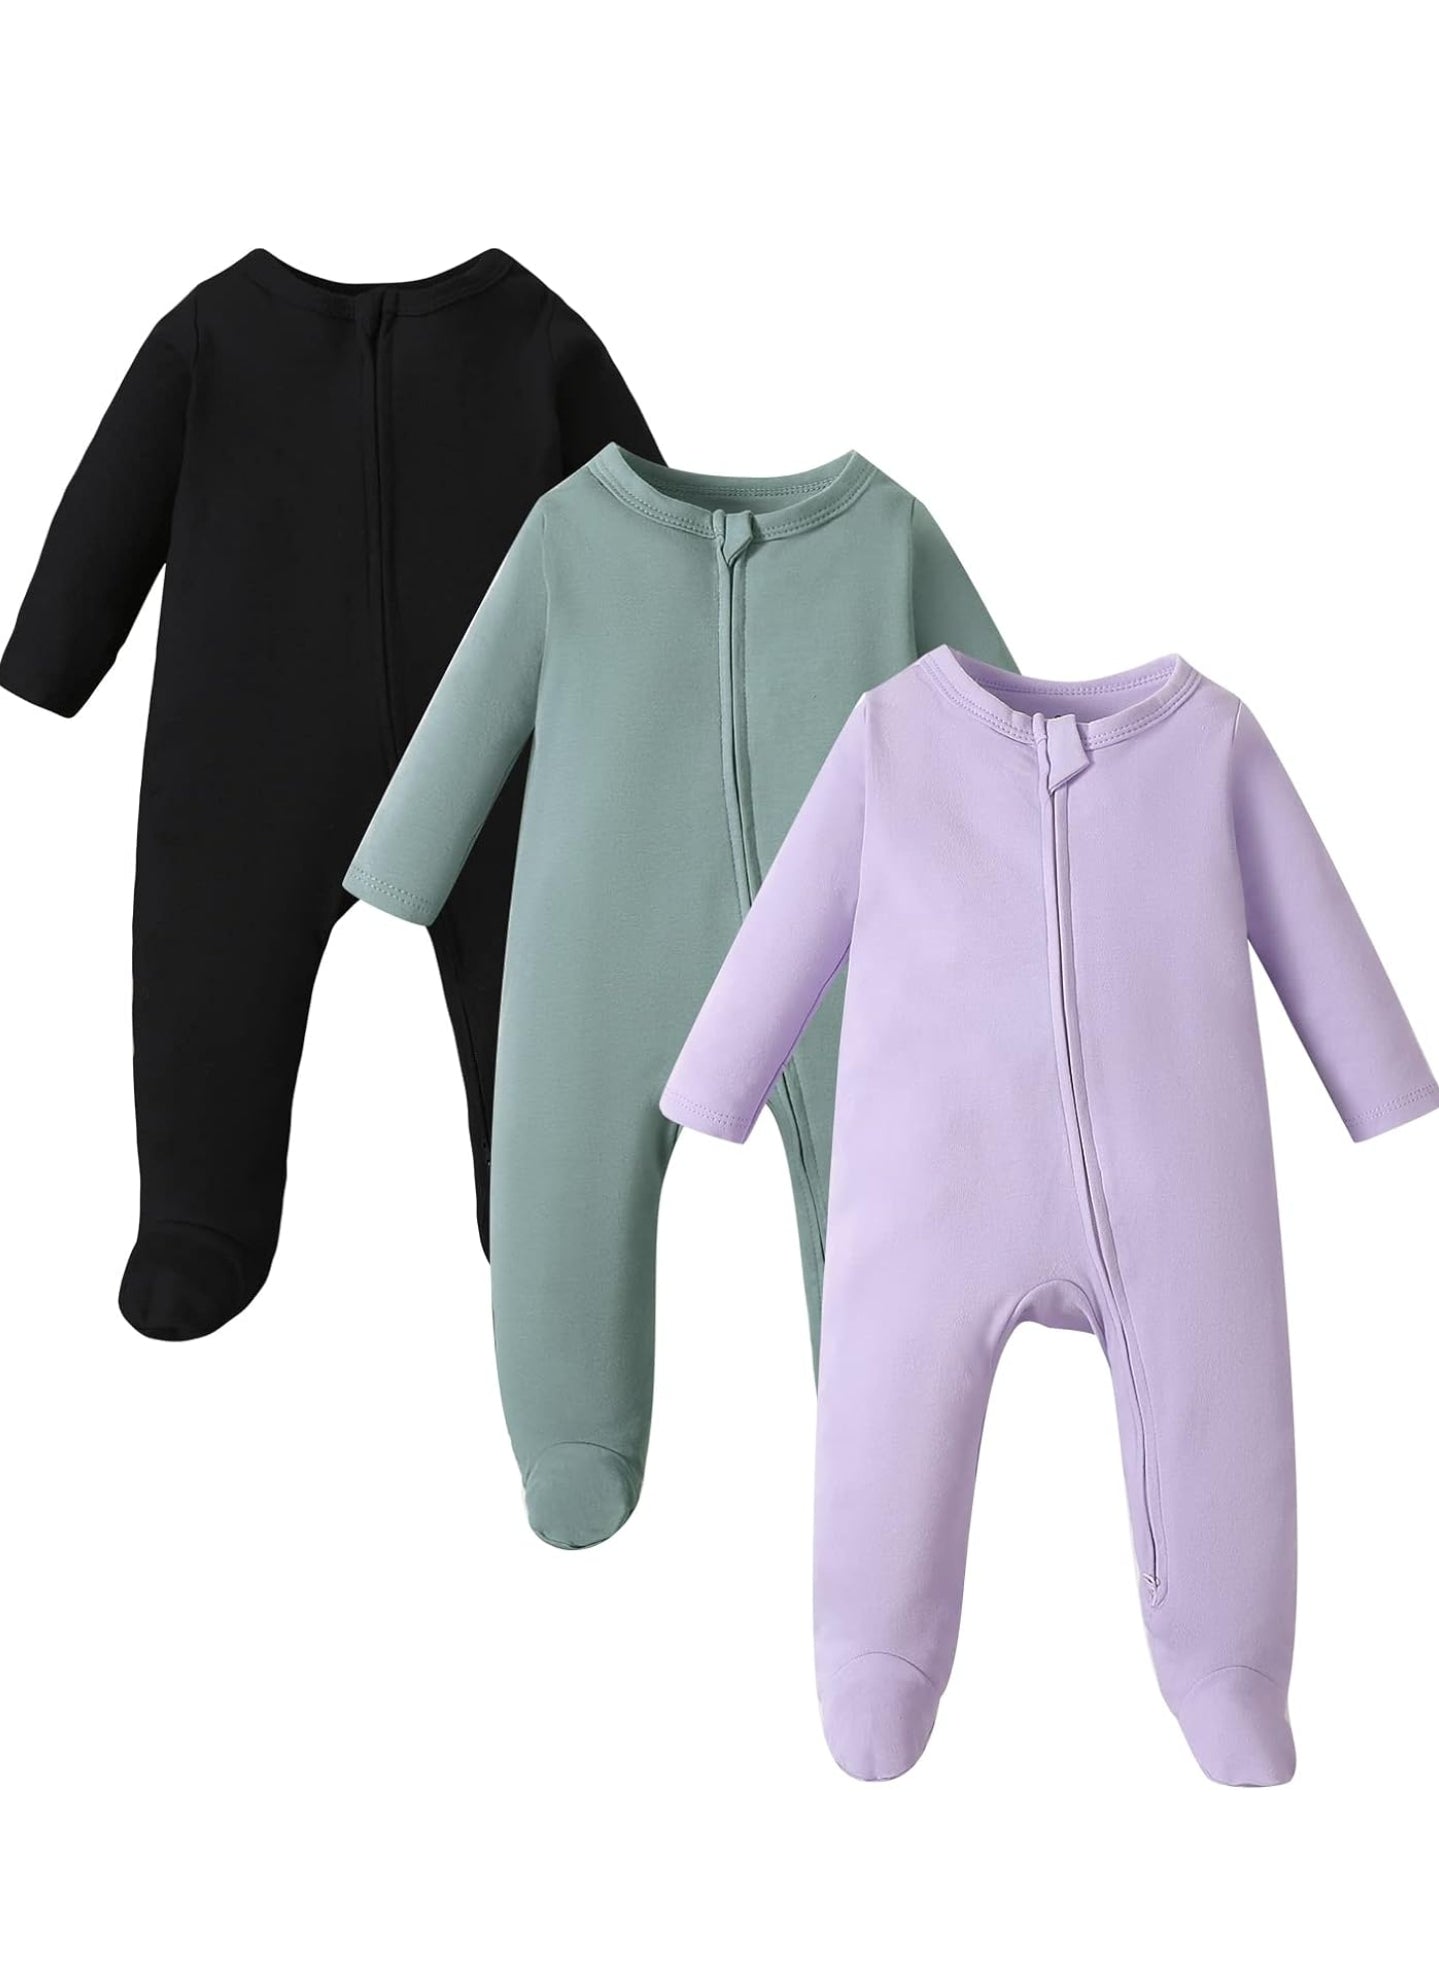 OPAWO Newborn Footie Pajamas (3pk)